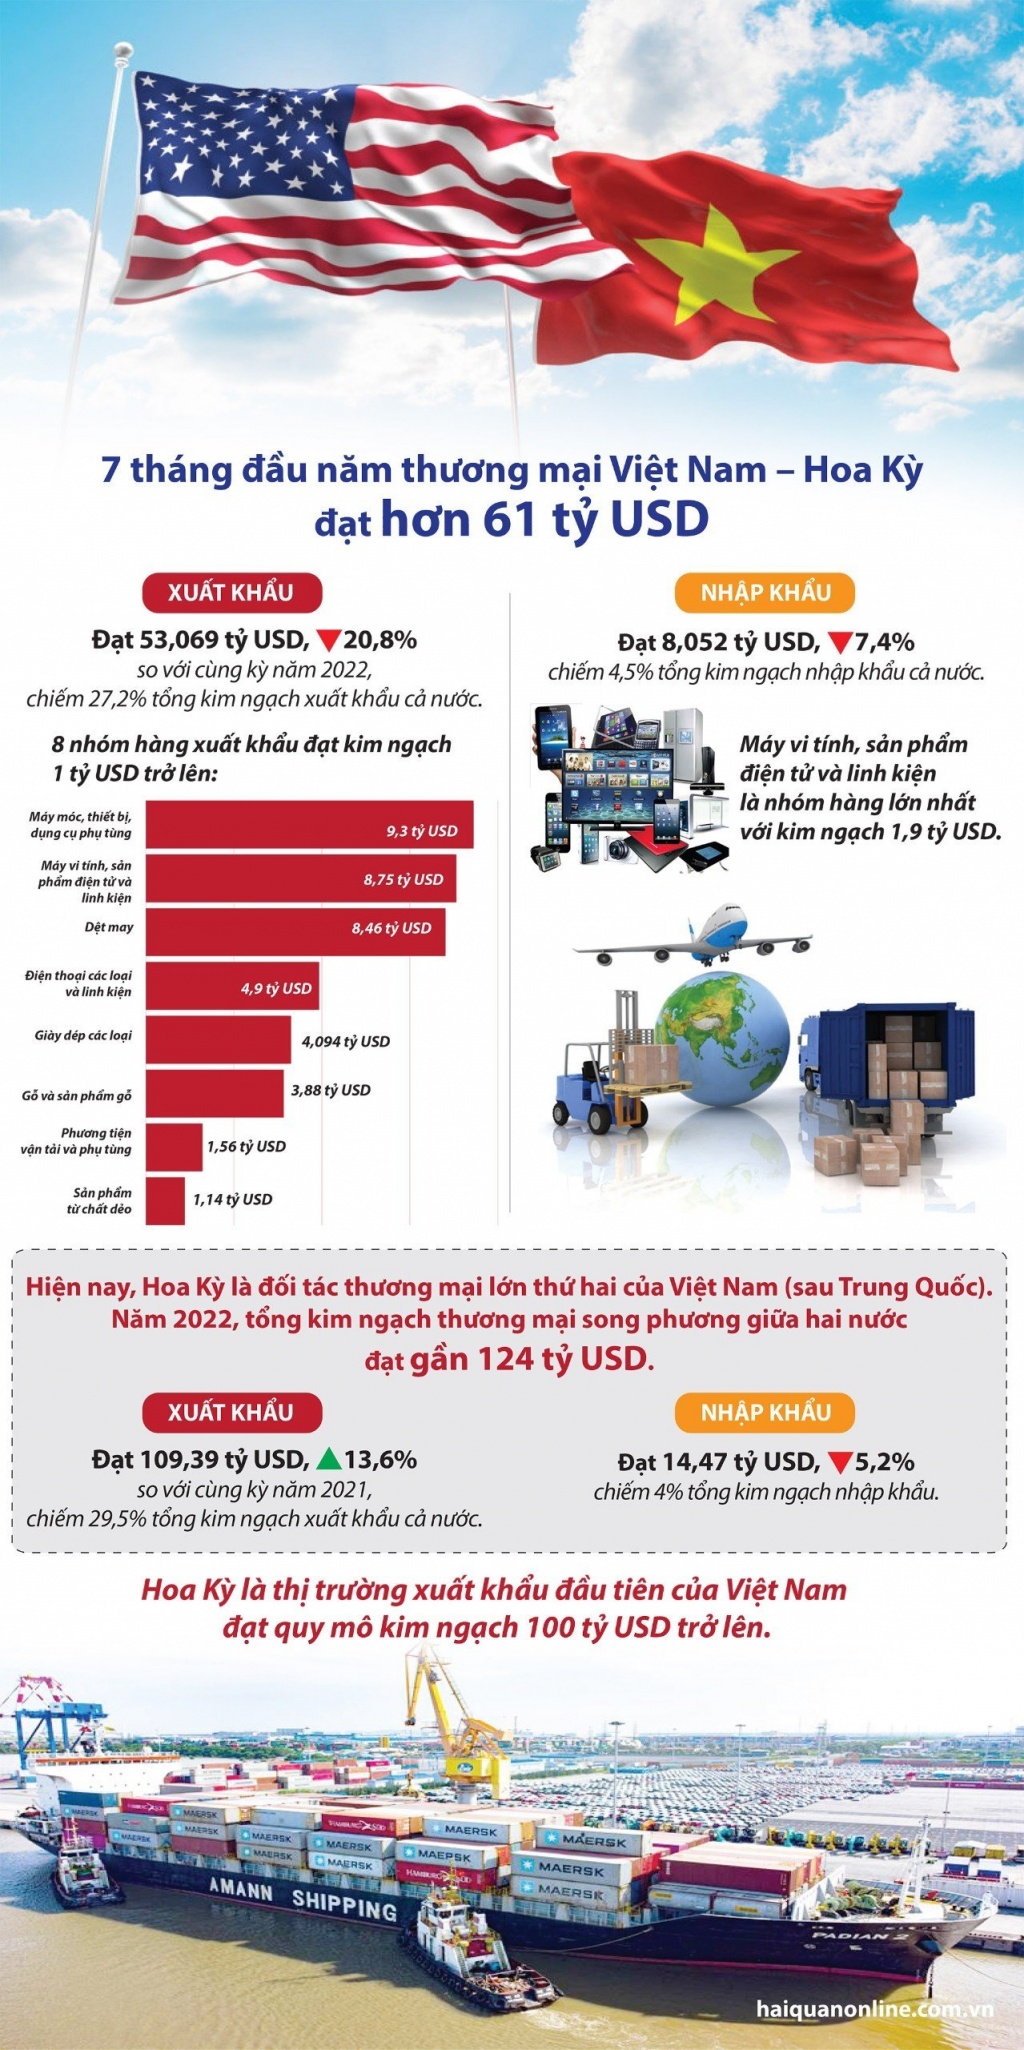 Thương mại Việt Nam - Hoa Kỳ đạt hơn 61 tỷ USD trong 7 tháng